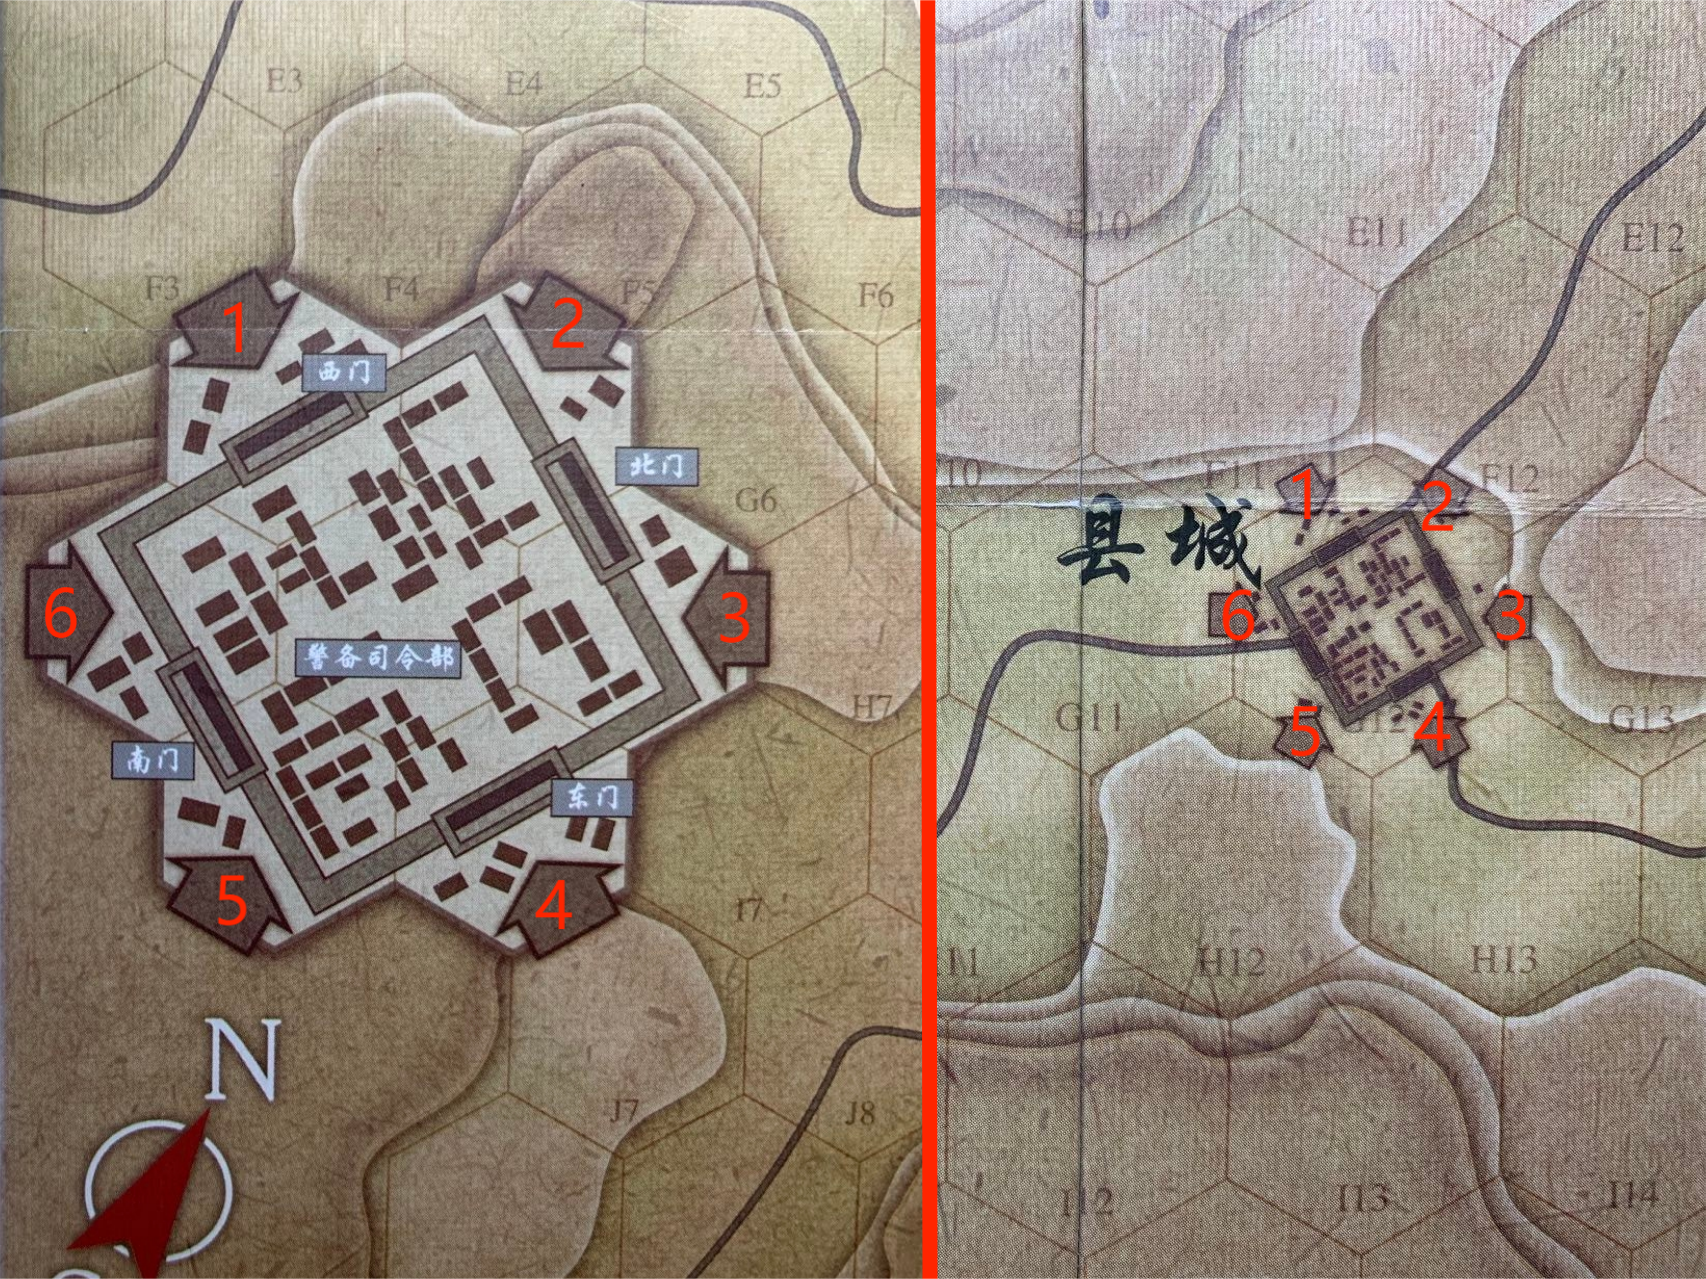 版图设计上，通过六个单向箭头提示玩家进出县城时，大小地图之间的相对位置关系，即只能从图中同样编号的箭头进出